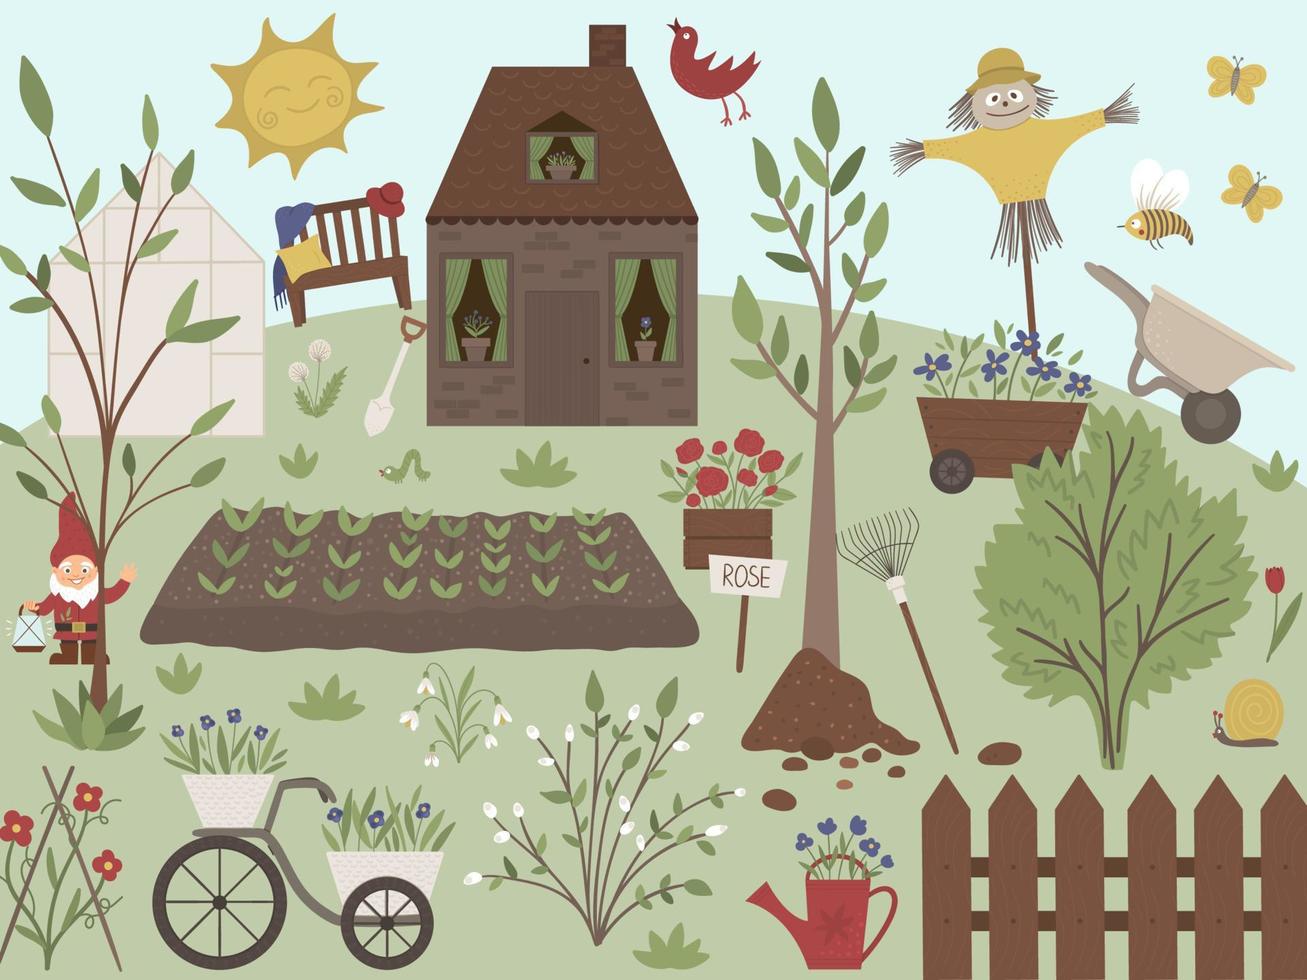 illustrazione vettoriale di giardino con strumenti, fiori, erbe aromatiche, piante. scena primaverile piatta con una fattoria o una casa di campagna con alberi, panca, serra, sole, attrezzature da giardinaggio.